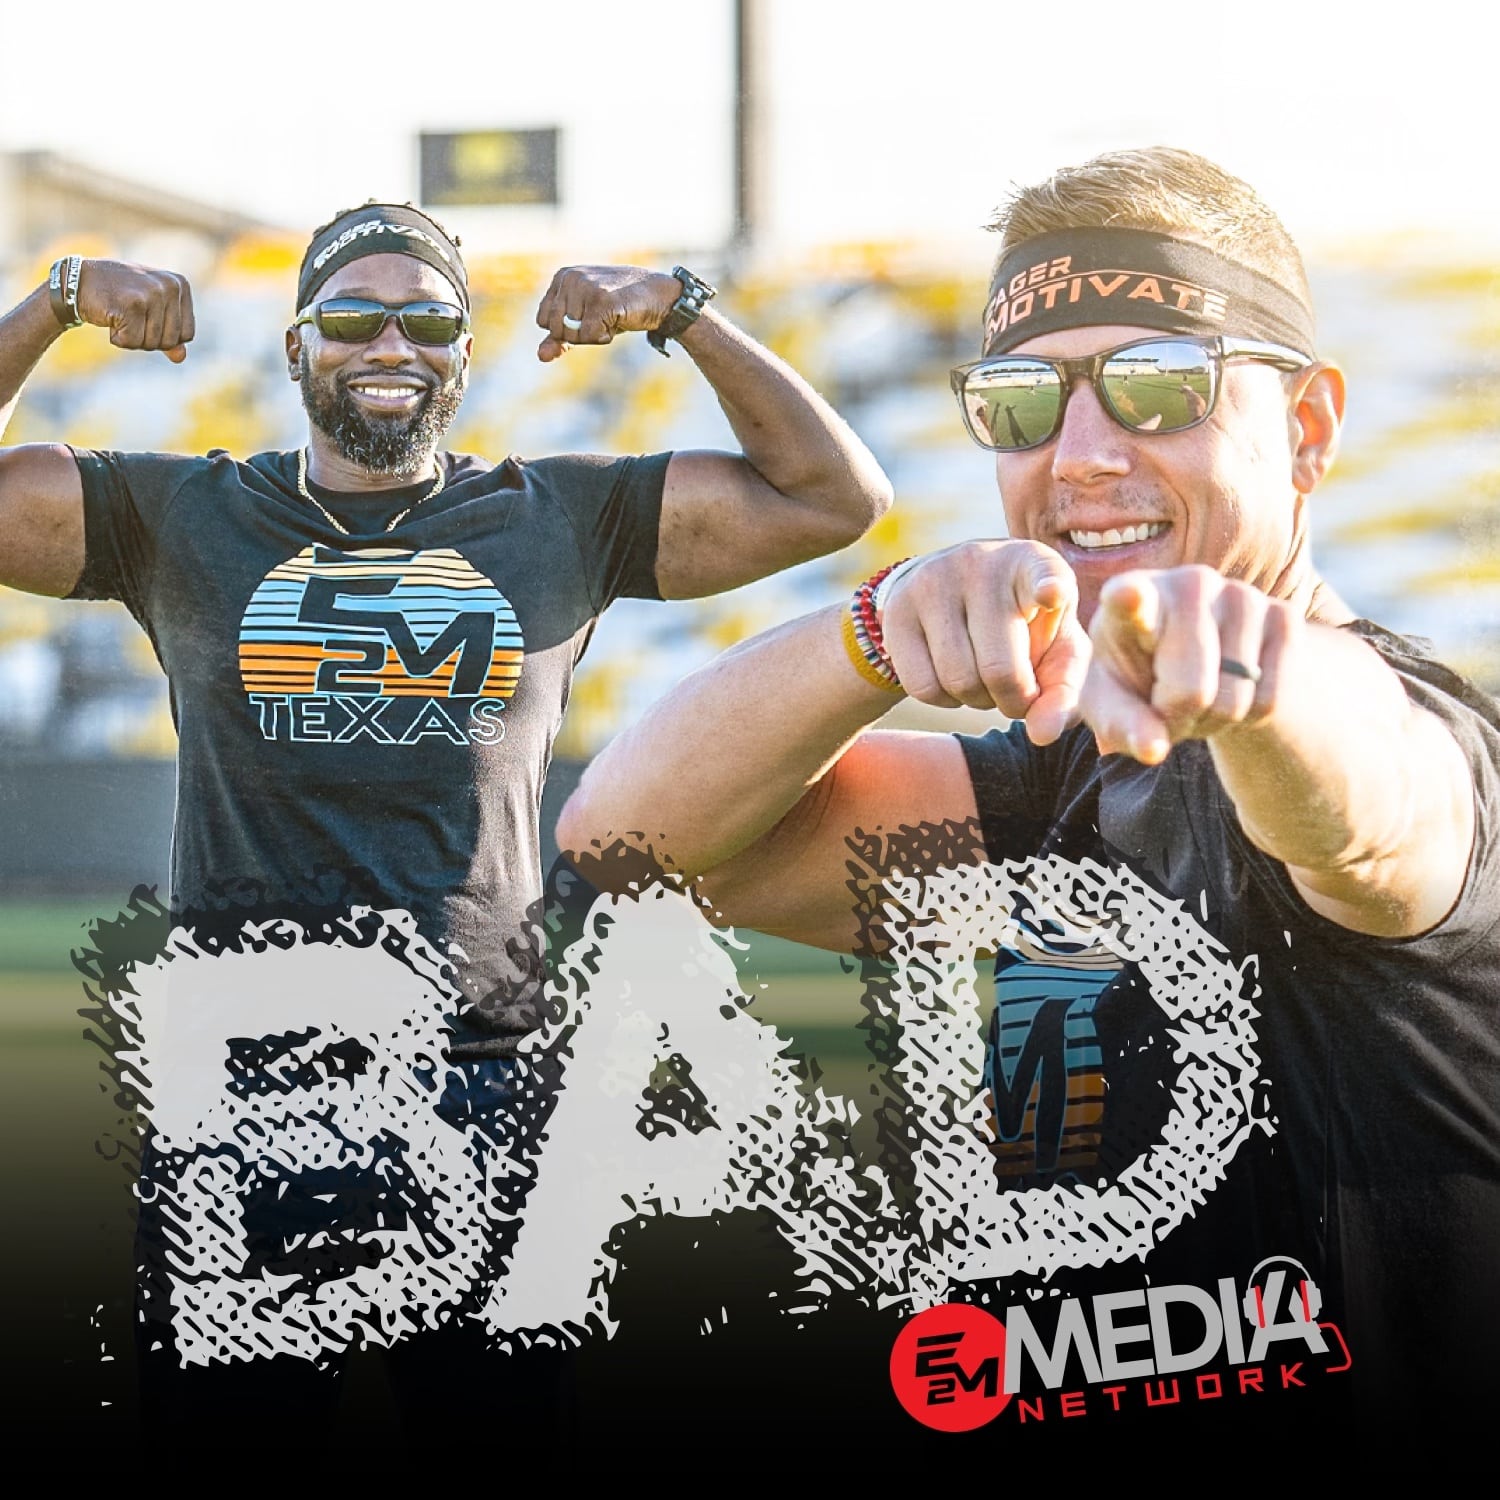 E2M Fitness Media Network – BAD Podcast – “Win or Lose, Come back”